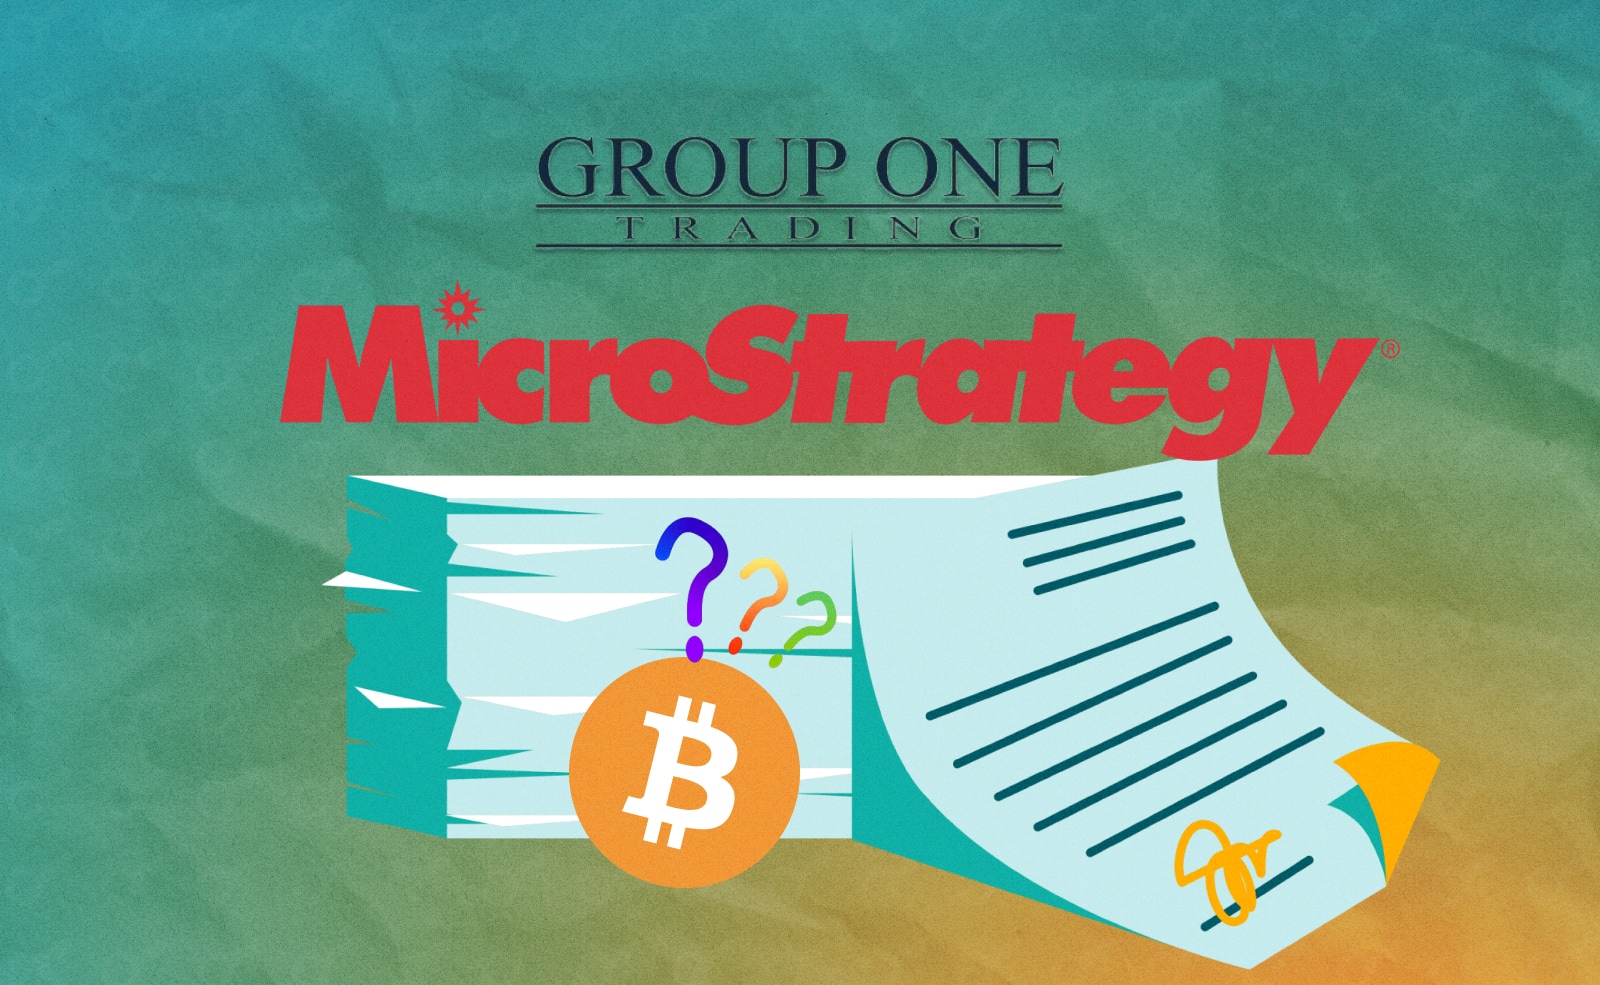 американский поставщик опционов Group One готовит сделку по покупке 1,3 млн акций MicroStrategy. Это 13,5% компании, которая является крупнейшим частным холдером BTC среди коммерческих контрагентов.